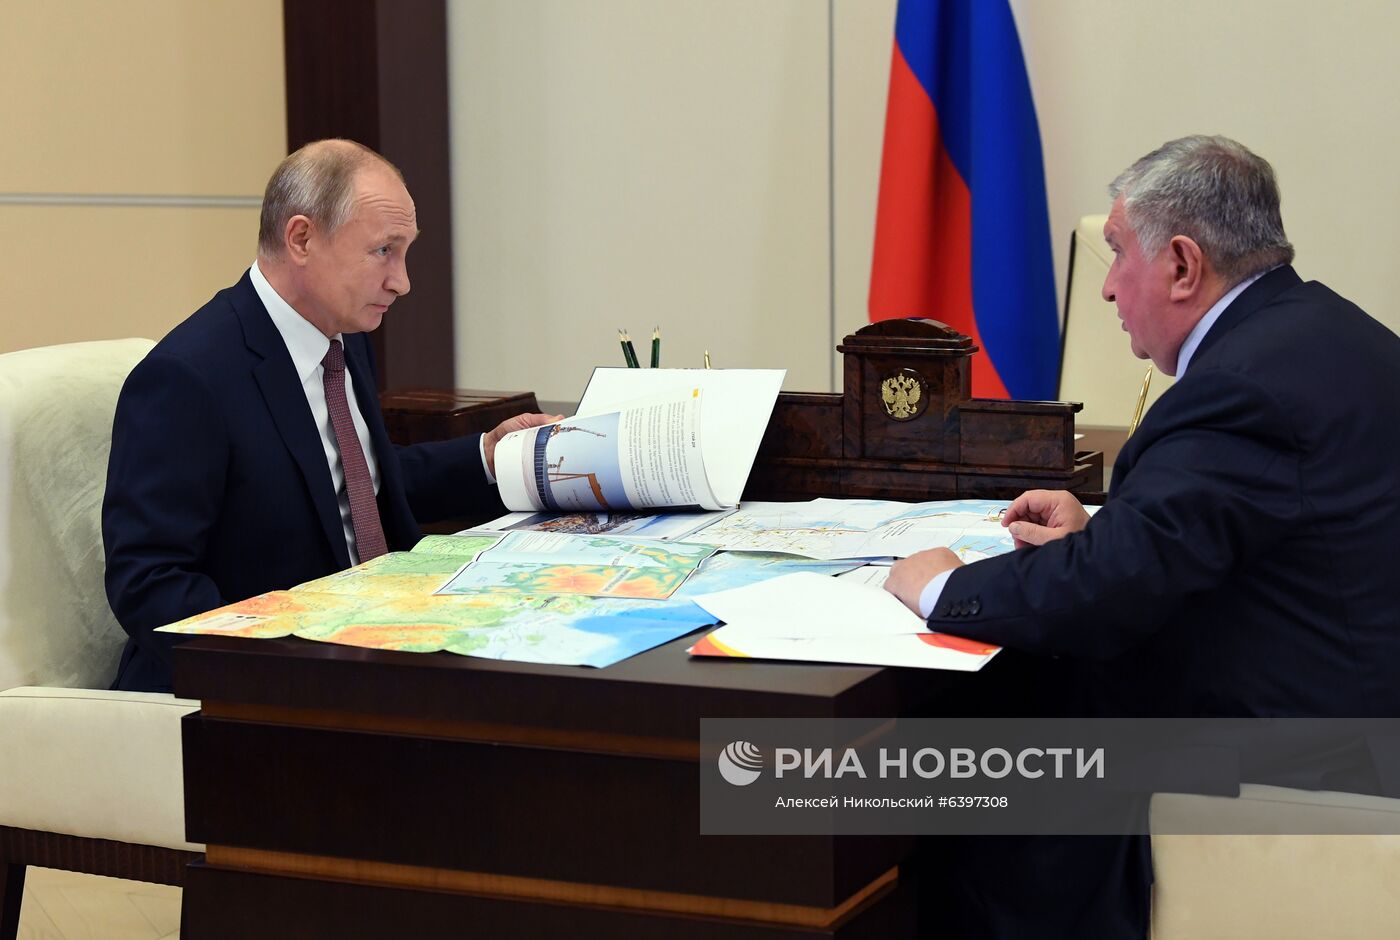 Рабочая встреча президента РФ В. Путина с главой компании "Роснефть" И. Сечиным